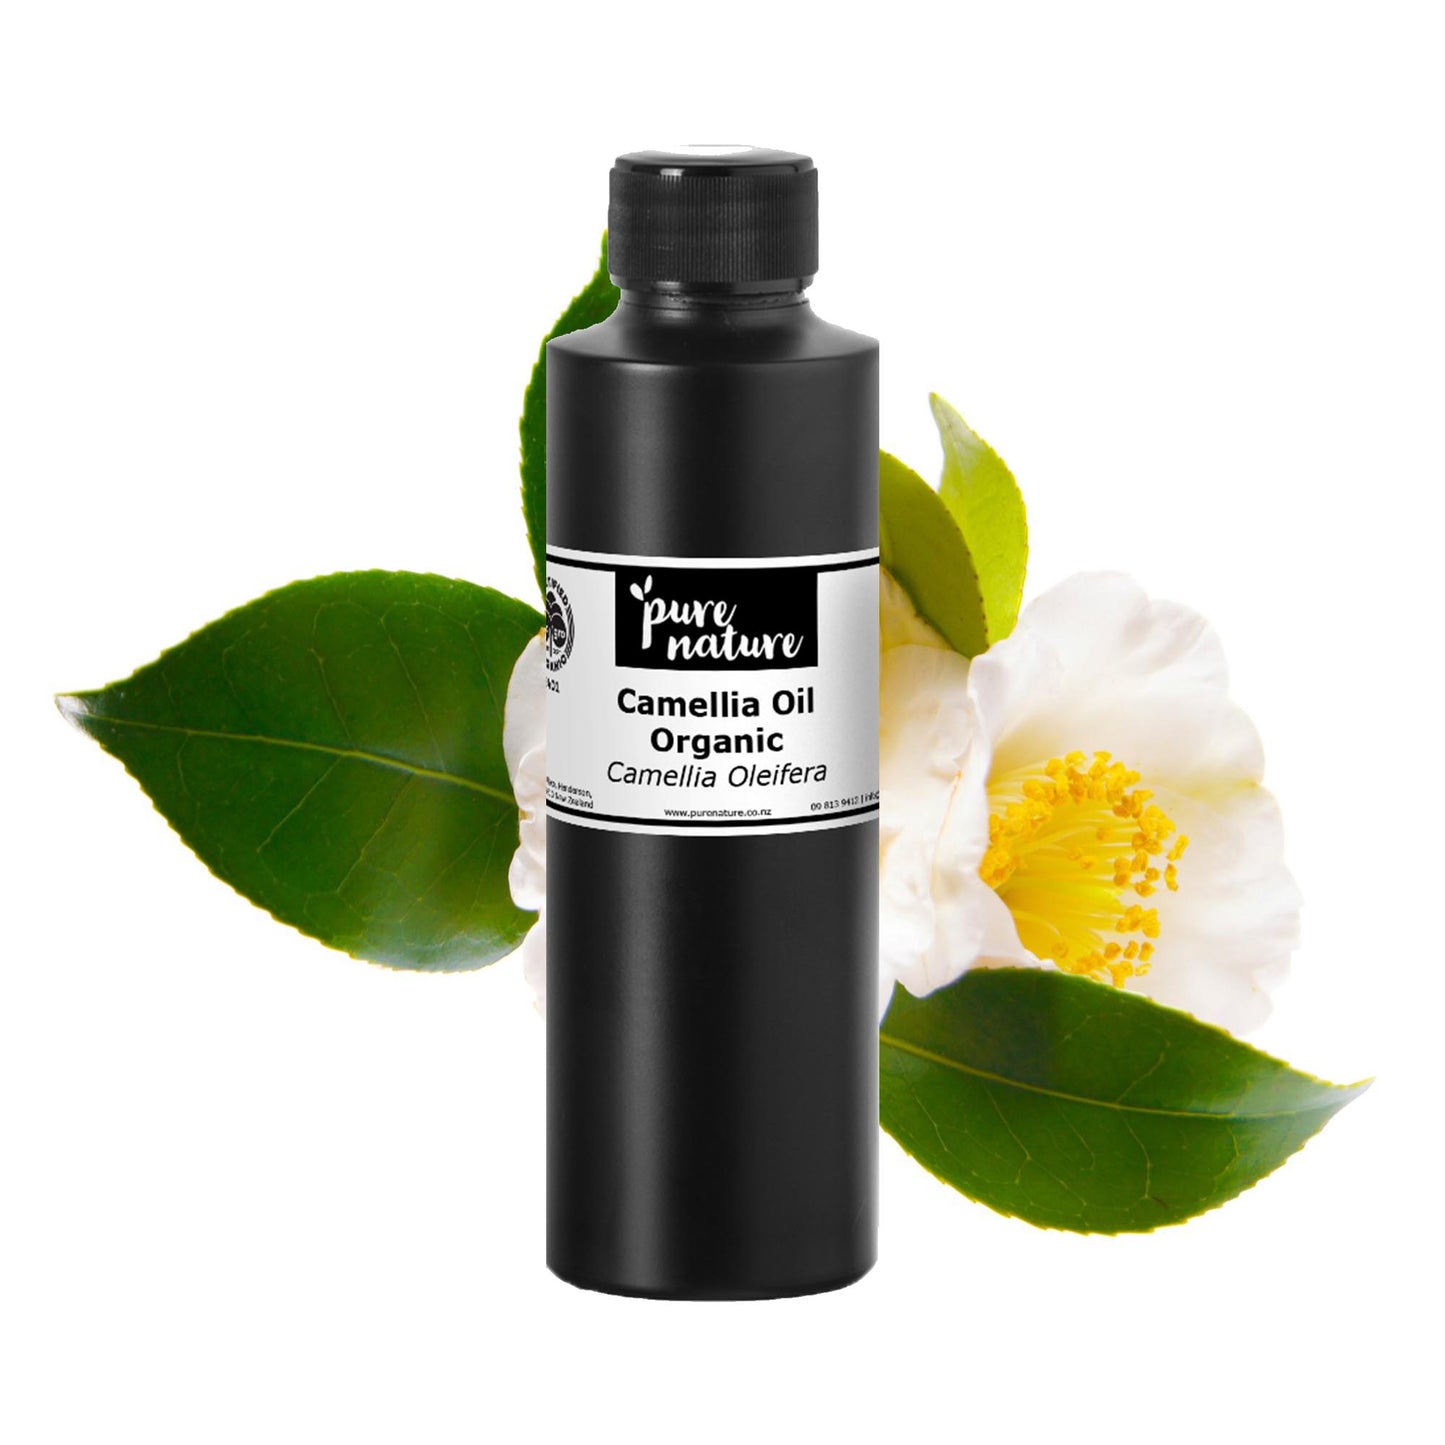 Camellia Oil, Organic